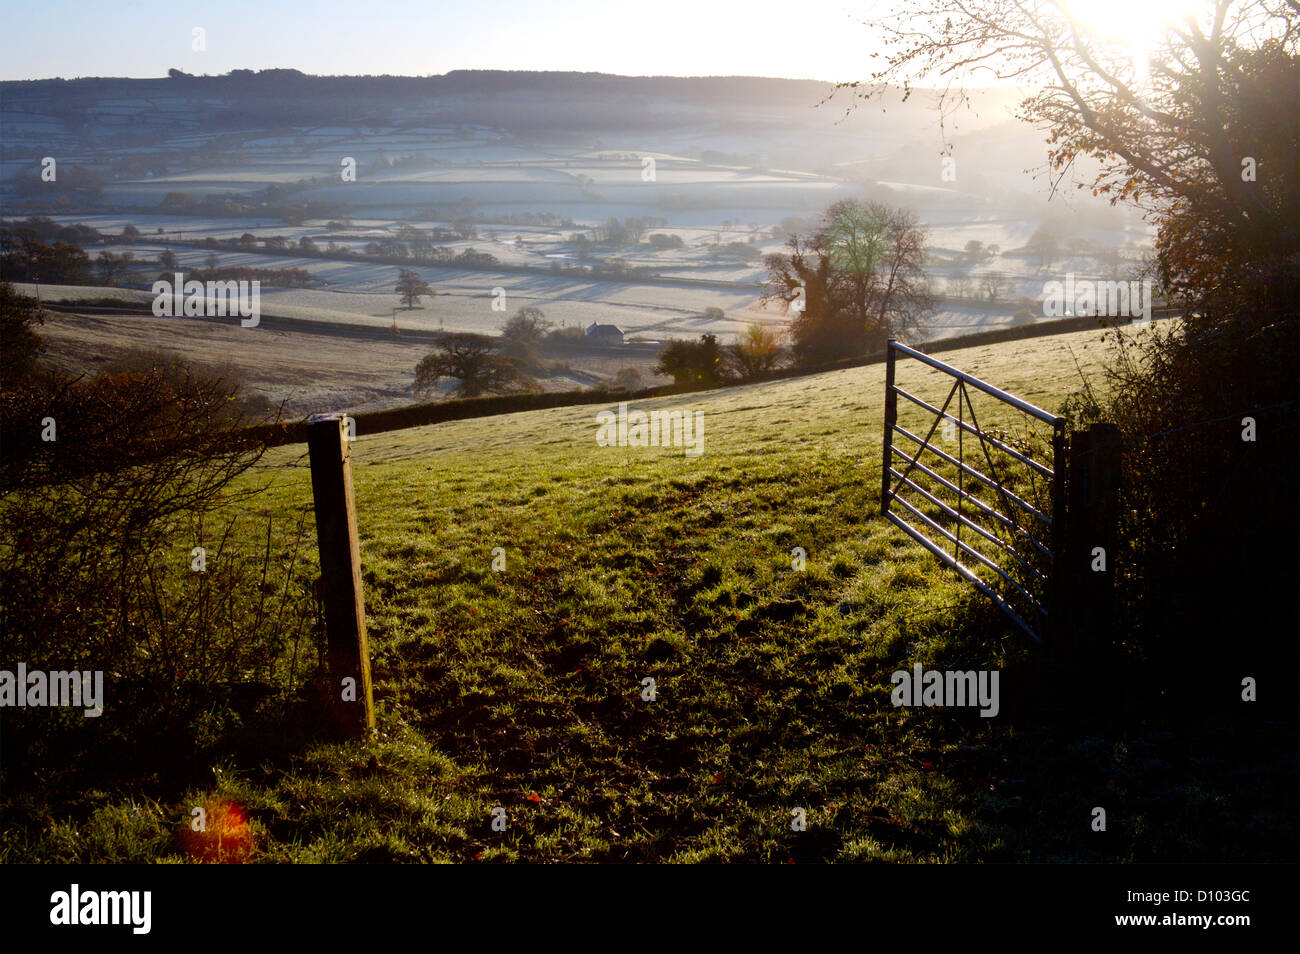 Axe valley, near Kilmington village, Devon, misty winter morning Stock Photo